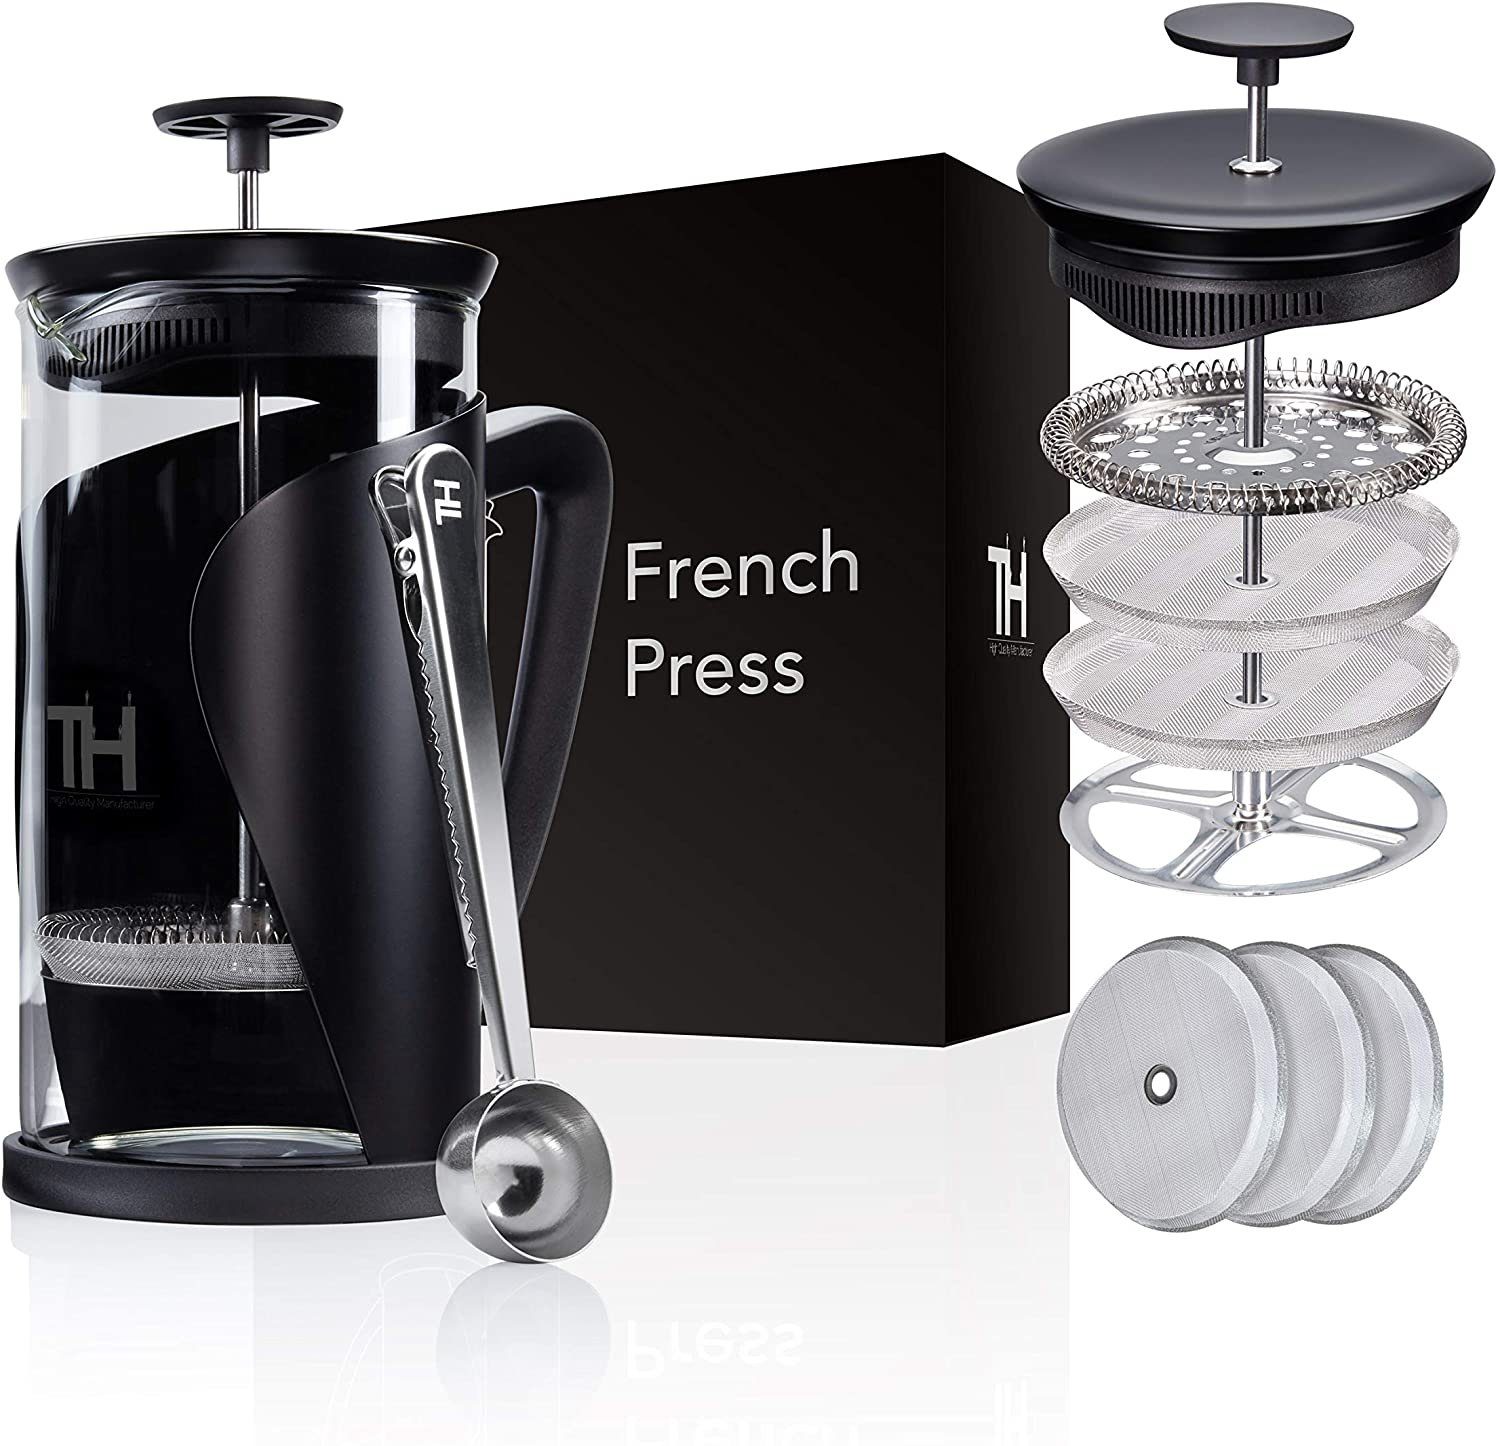 Thiru French Press Kanne 4D Filtersystem, Edelstahl Kaffeebereiter Glas mit 